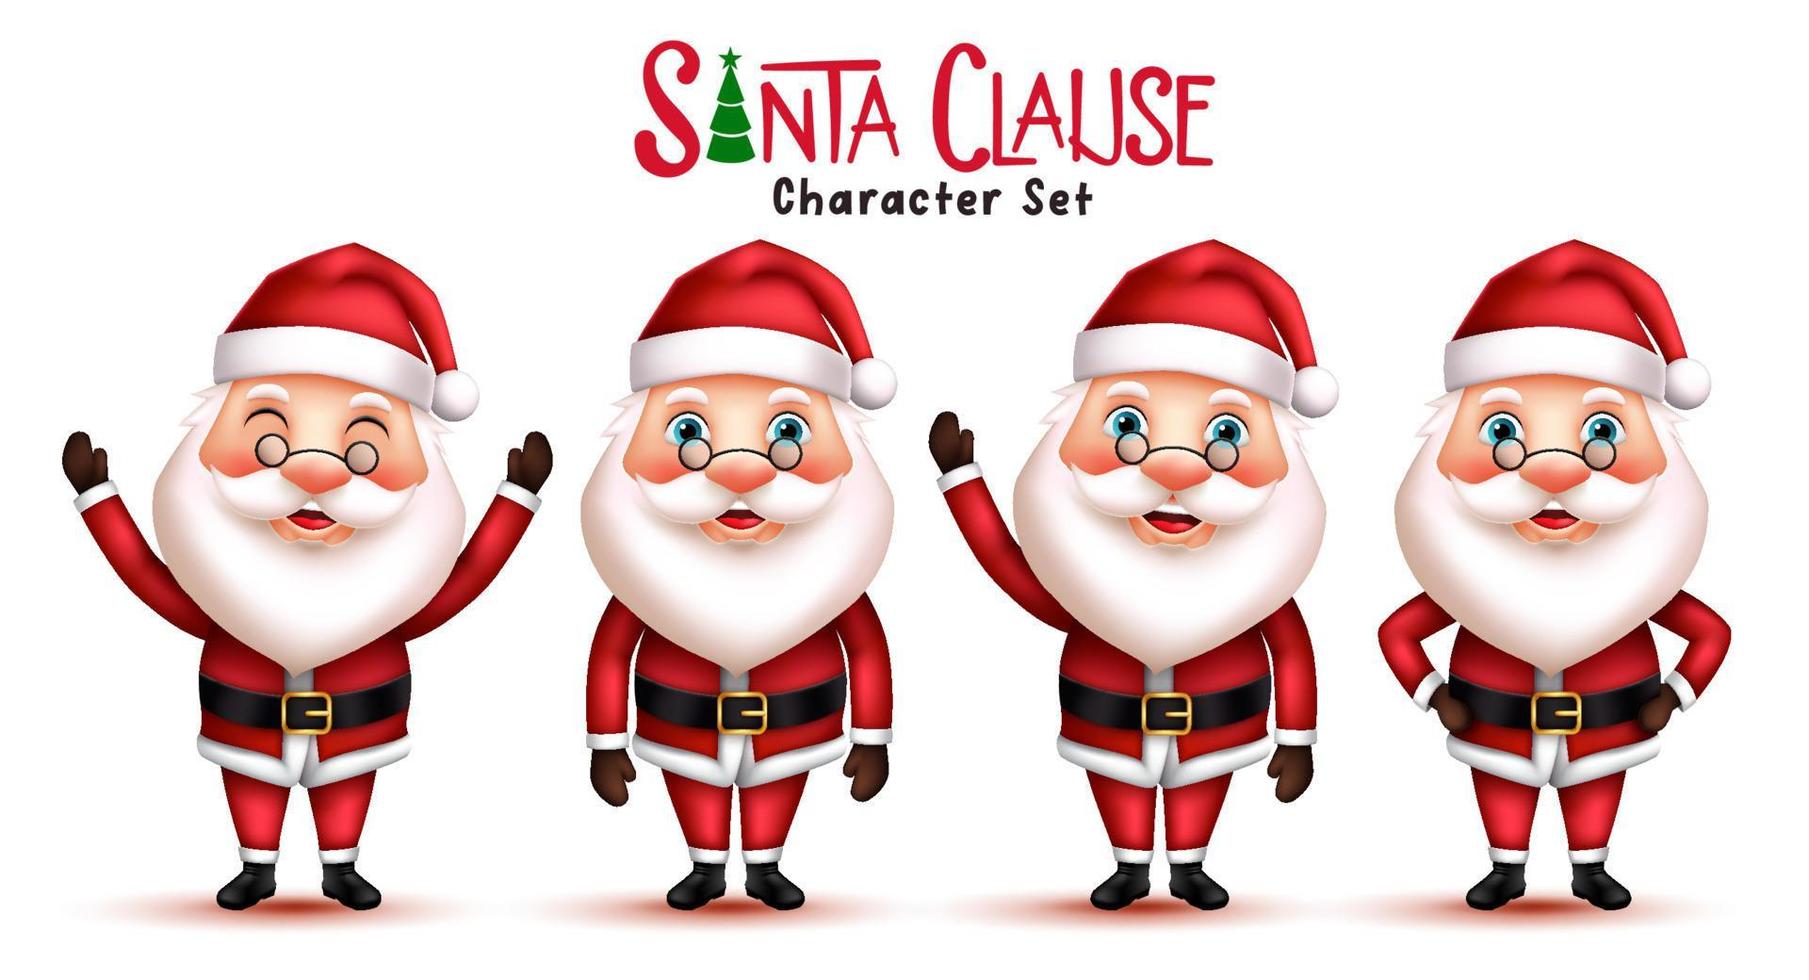 conjunto de vectores de caracteres navideños de santa claus. santa claus personajes 3d en pose y gestos de pie y saludando con expresión facial sonriente para la colección de la temporada navideña. ilustración vectorial